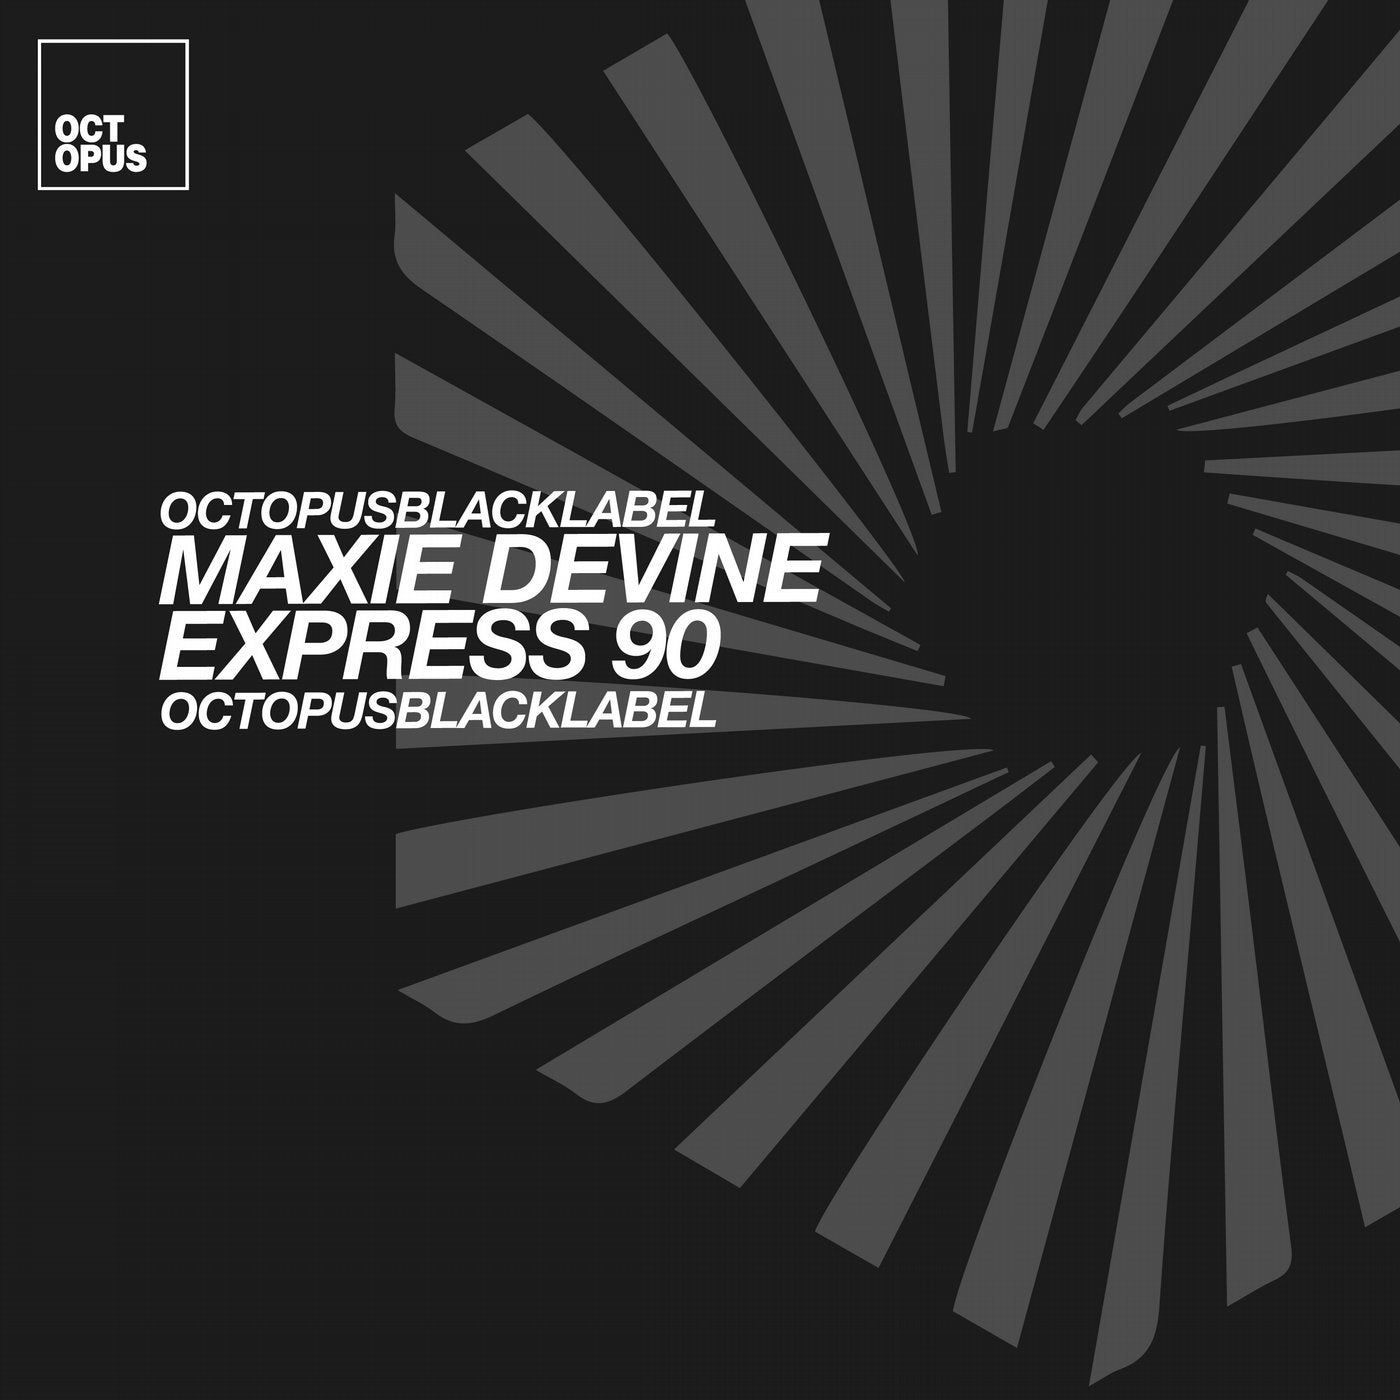 Express 90